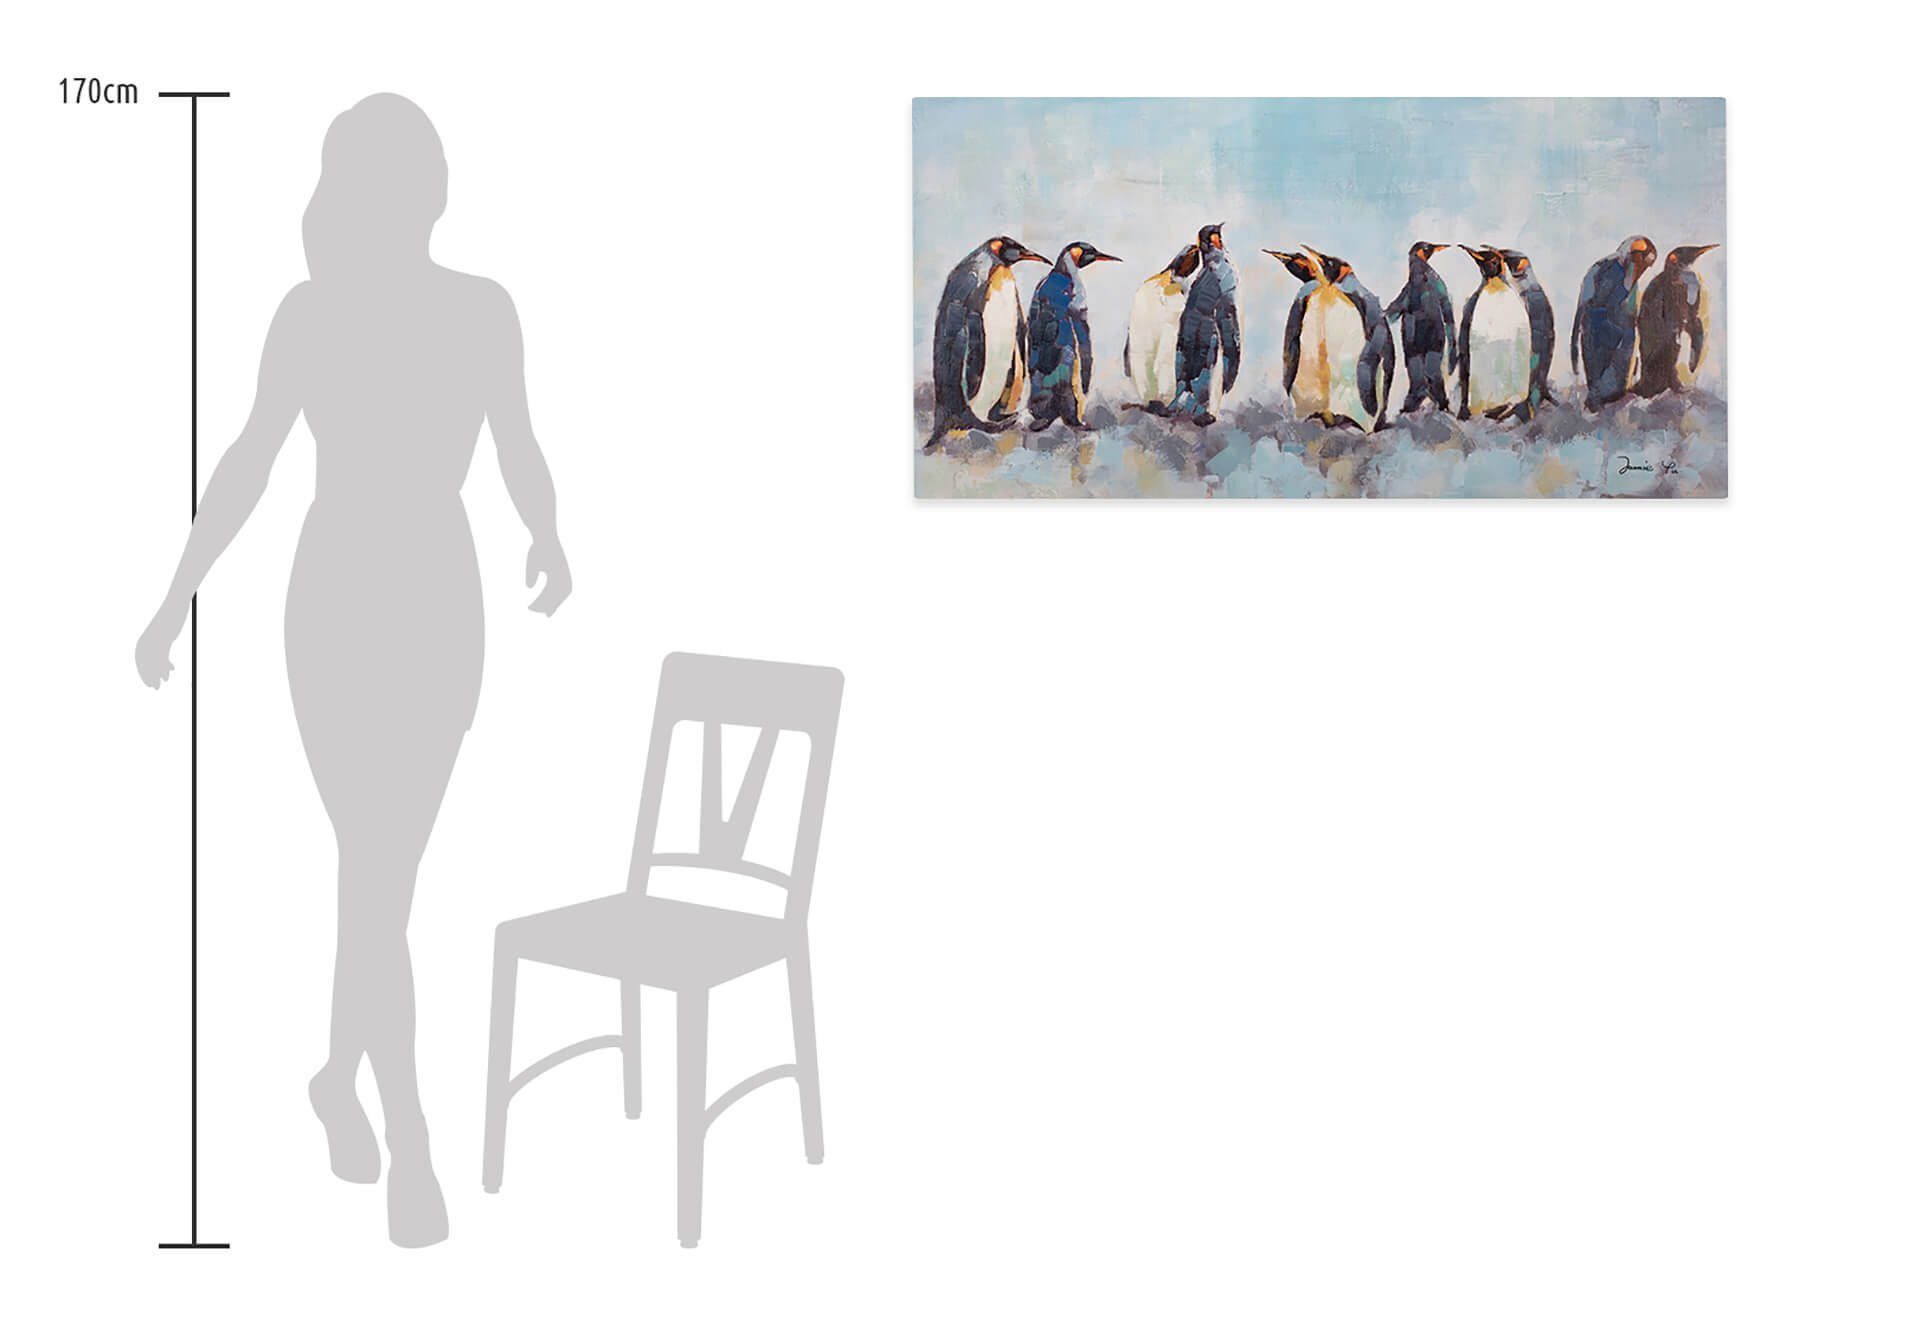 Pinguine Wandbild KUNSTLOFT Leinwandbild 120x60 HANDGEMALT Wohnzimmer Gemälde Kreis 100% der cm,